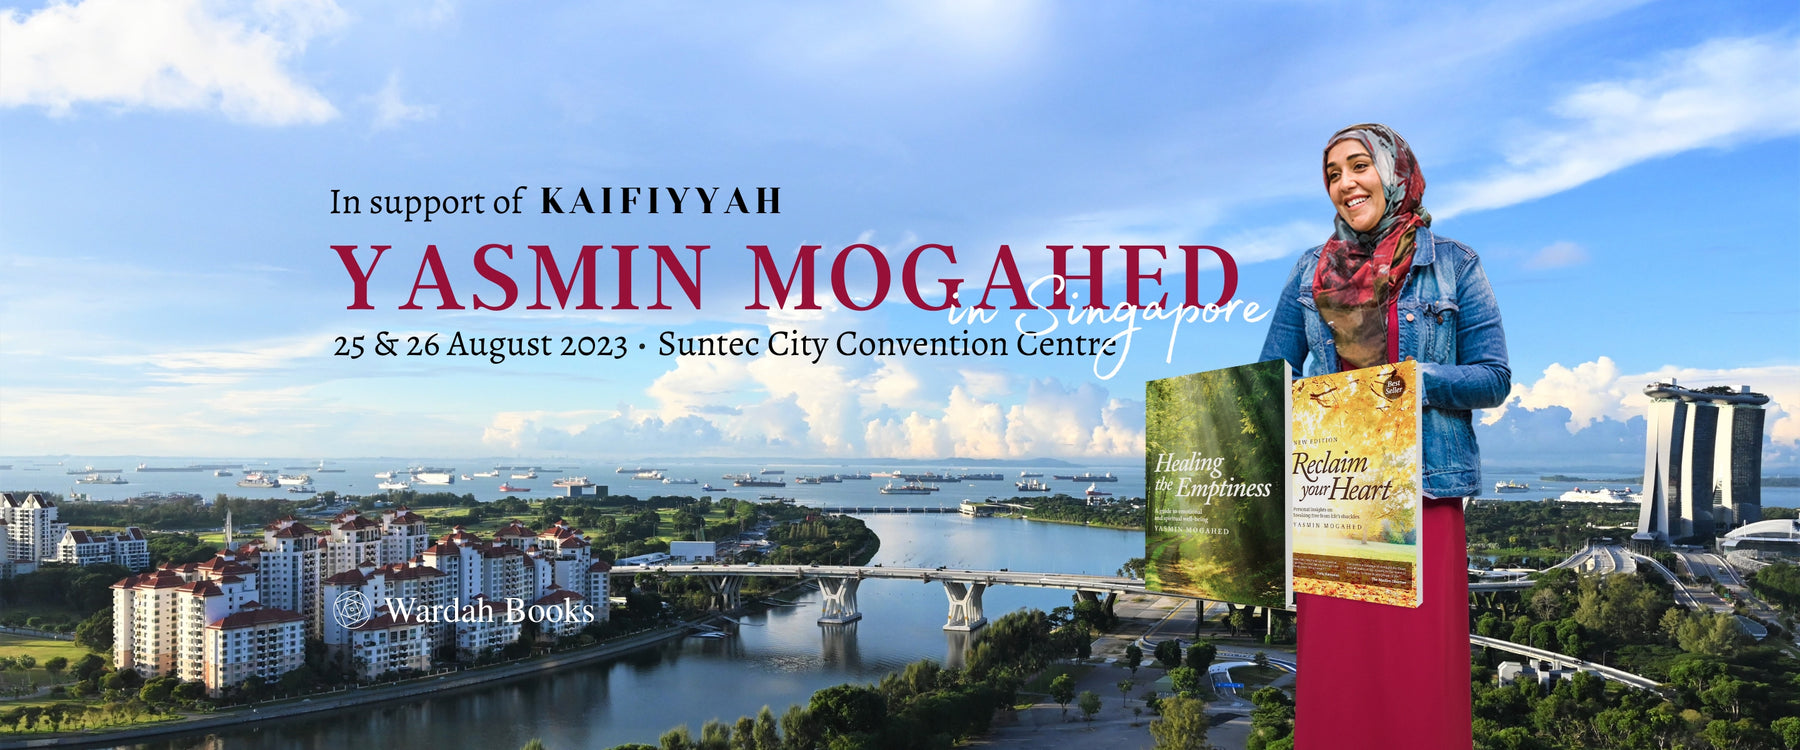 Yasmin Mogahed in Singapore 2023